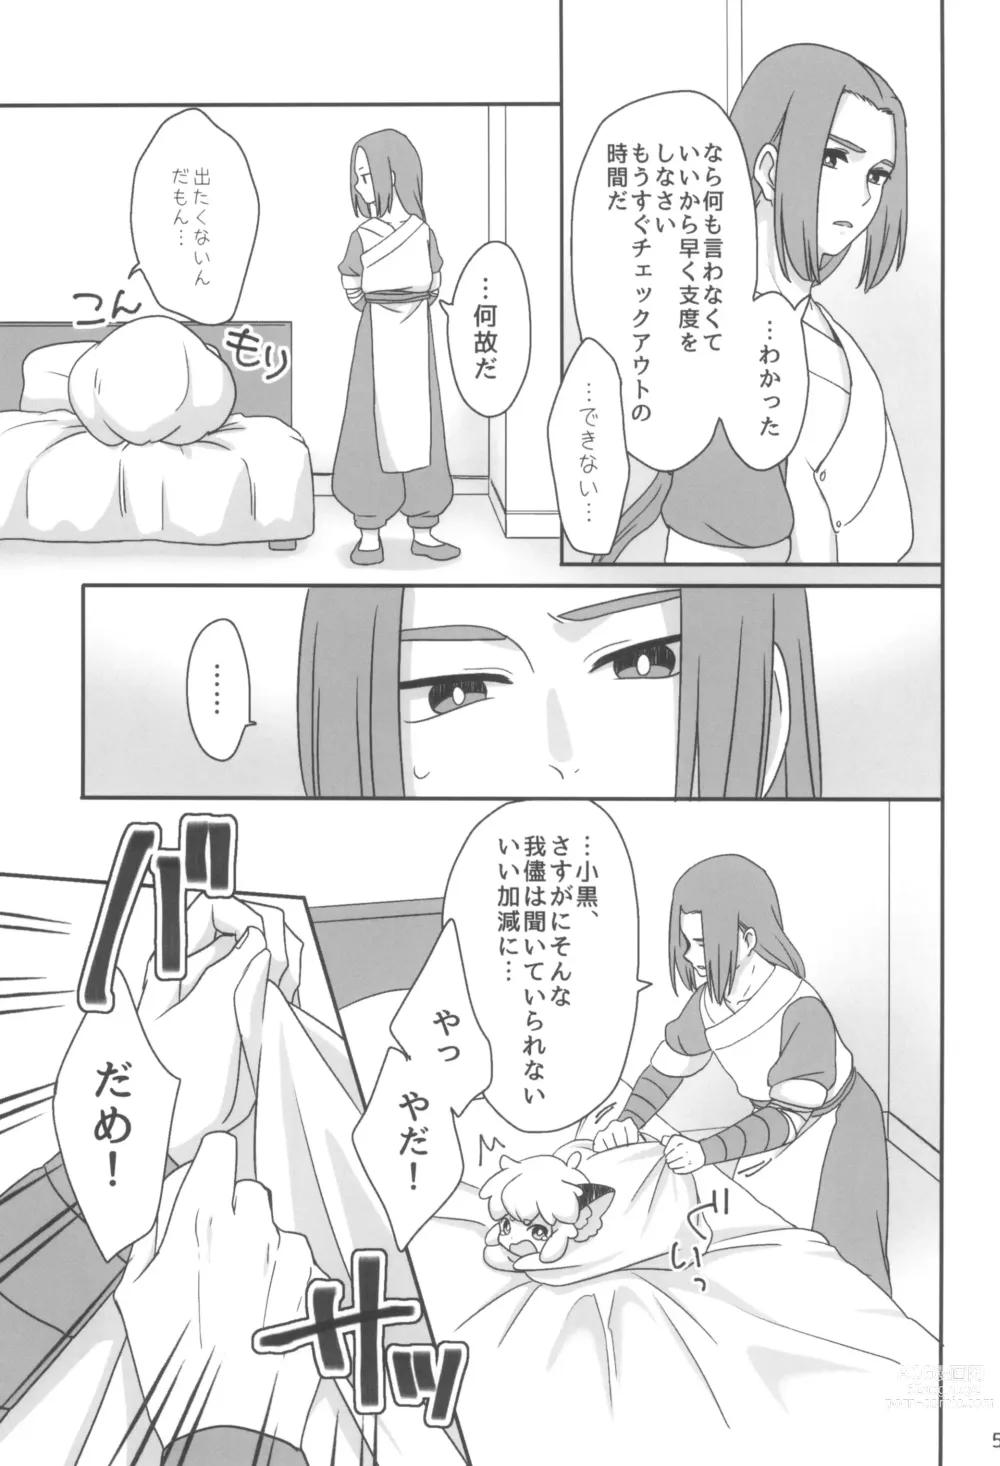 Page 5 of doujinshi Boku to shishou no hajimete no. -side6-